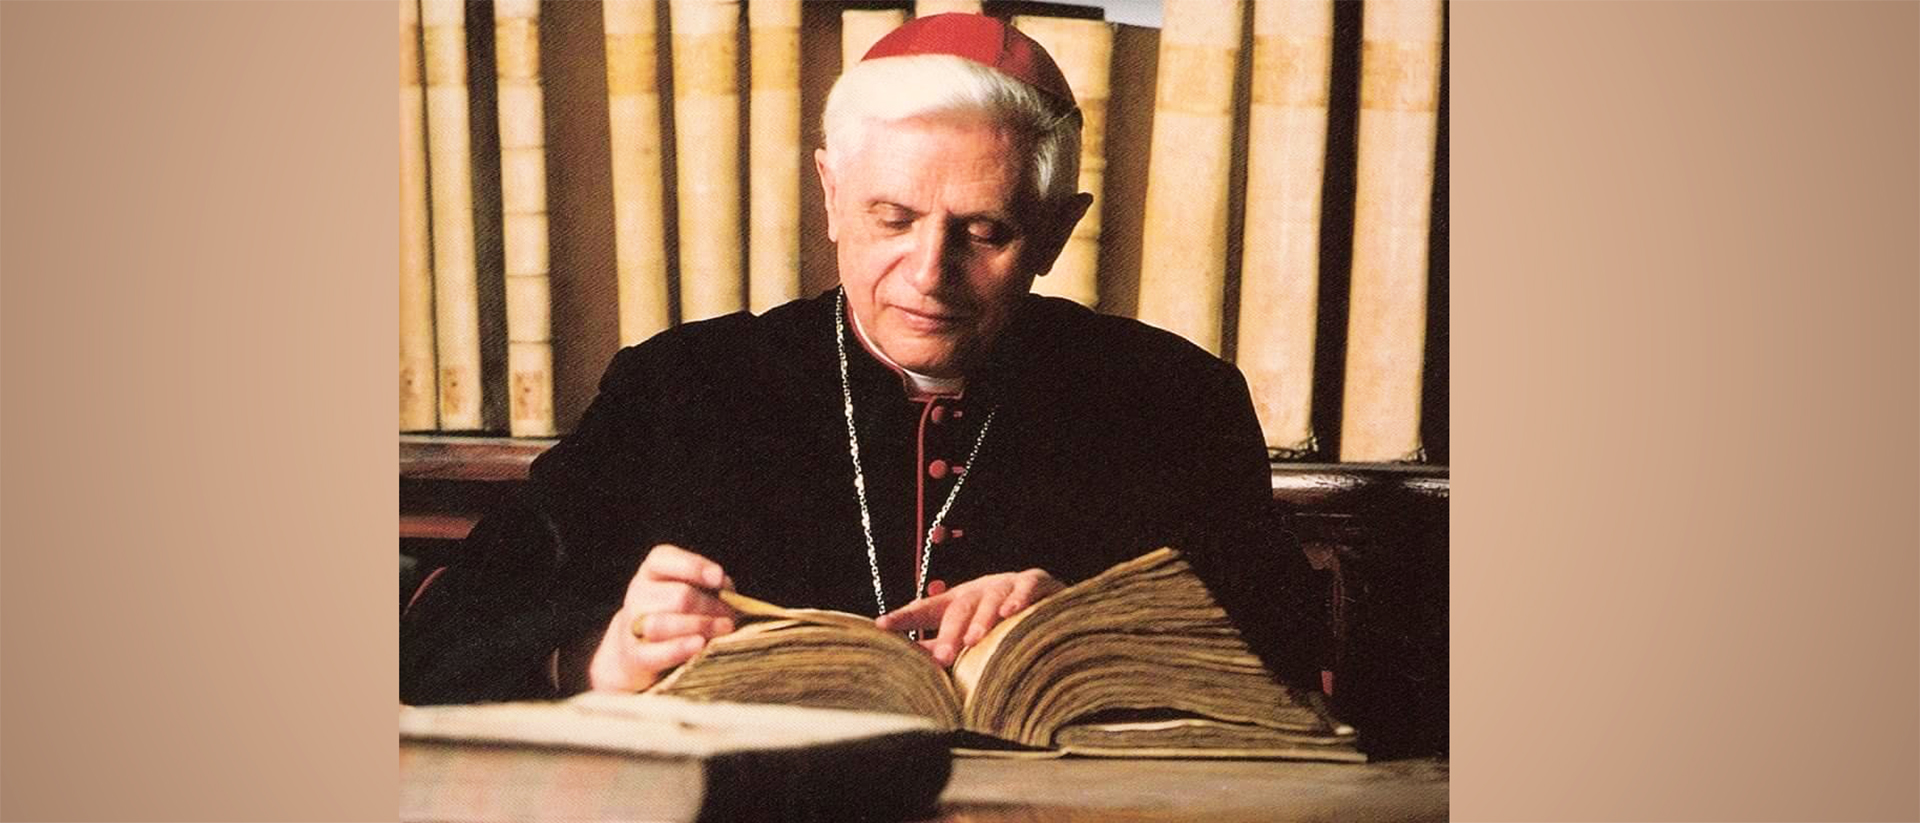 Alors qu'il était préfet de la CDF, le cardinal Ratzinger a été mis au courant des agissements pédophiles d'un prêtre de son ancien diocèse | Domaine public